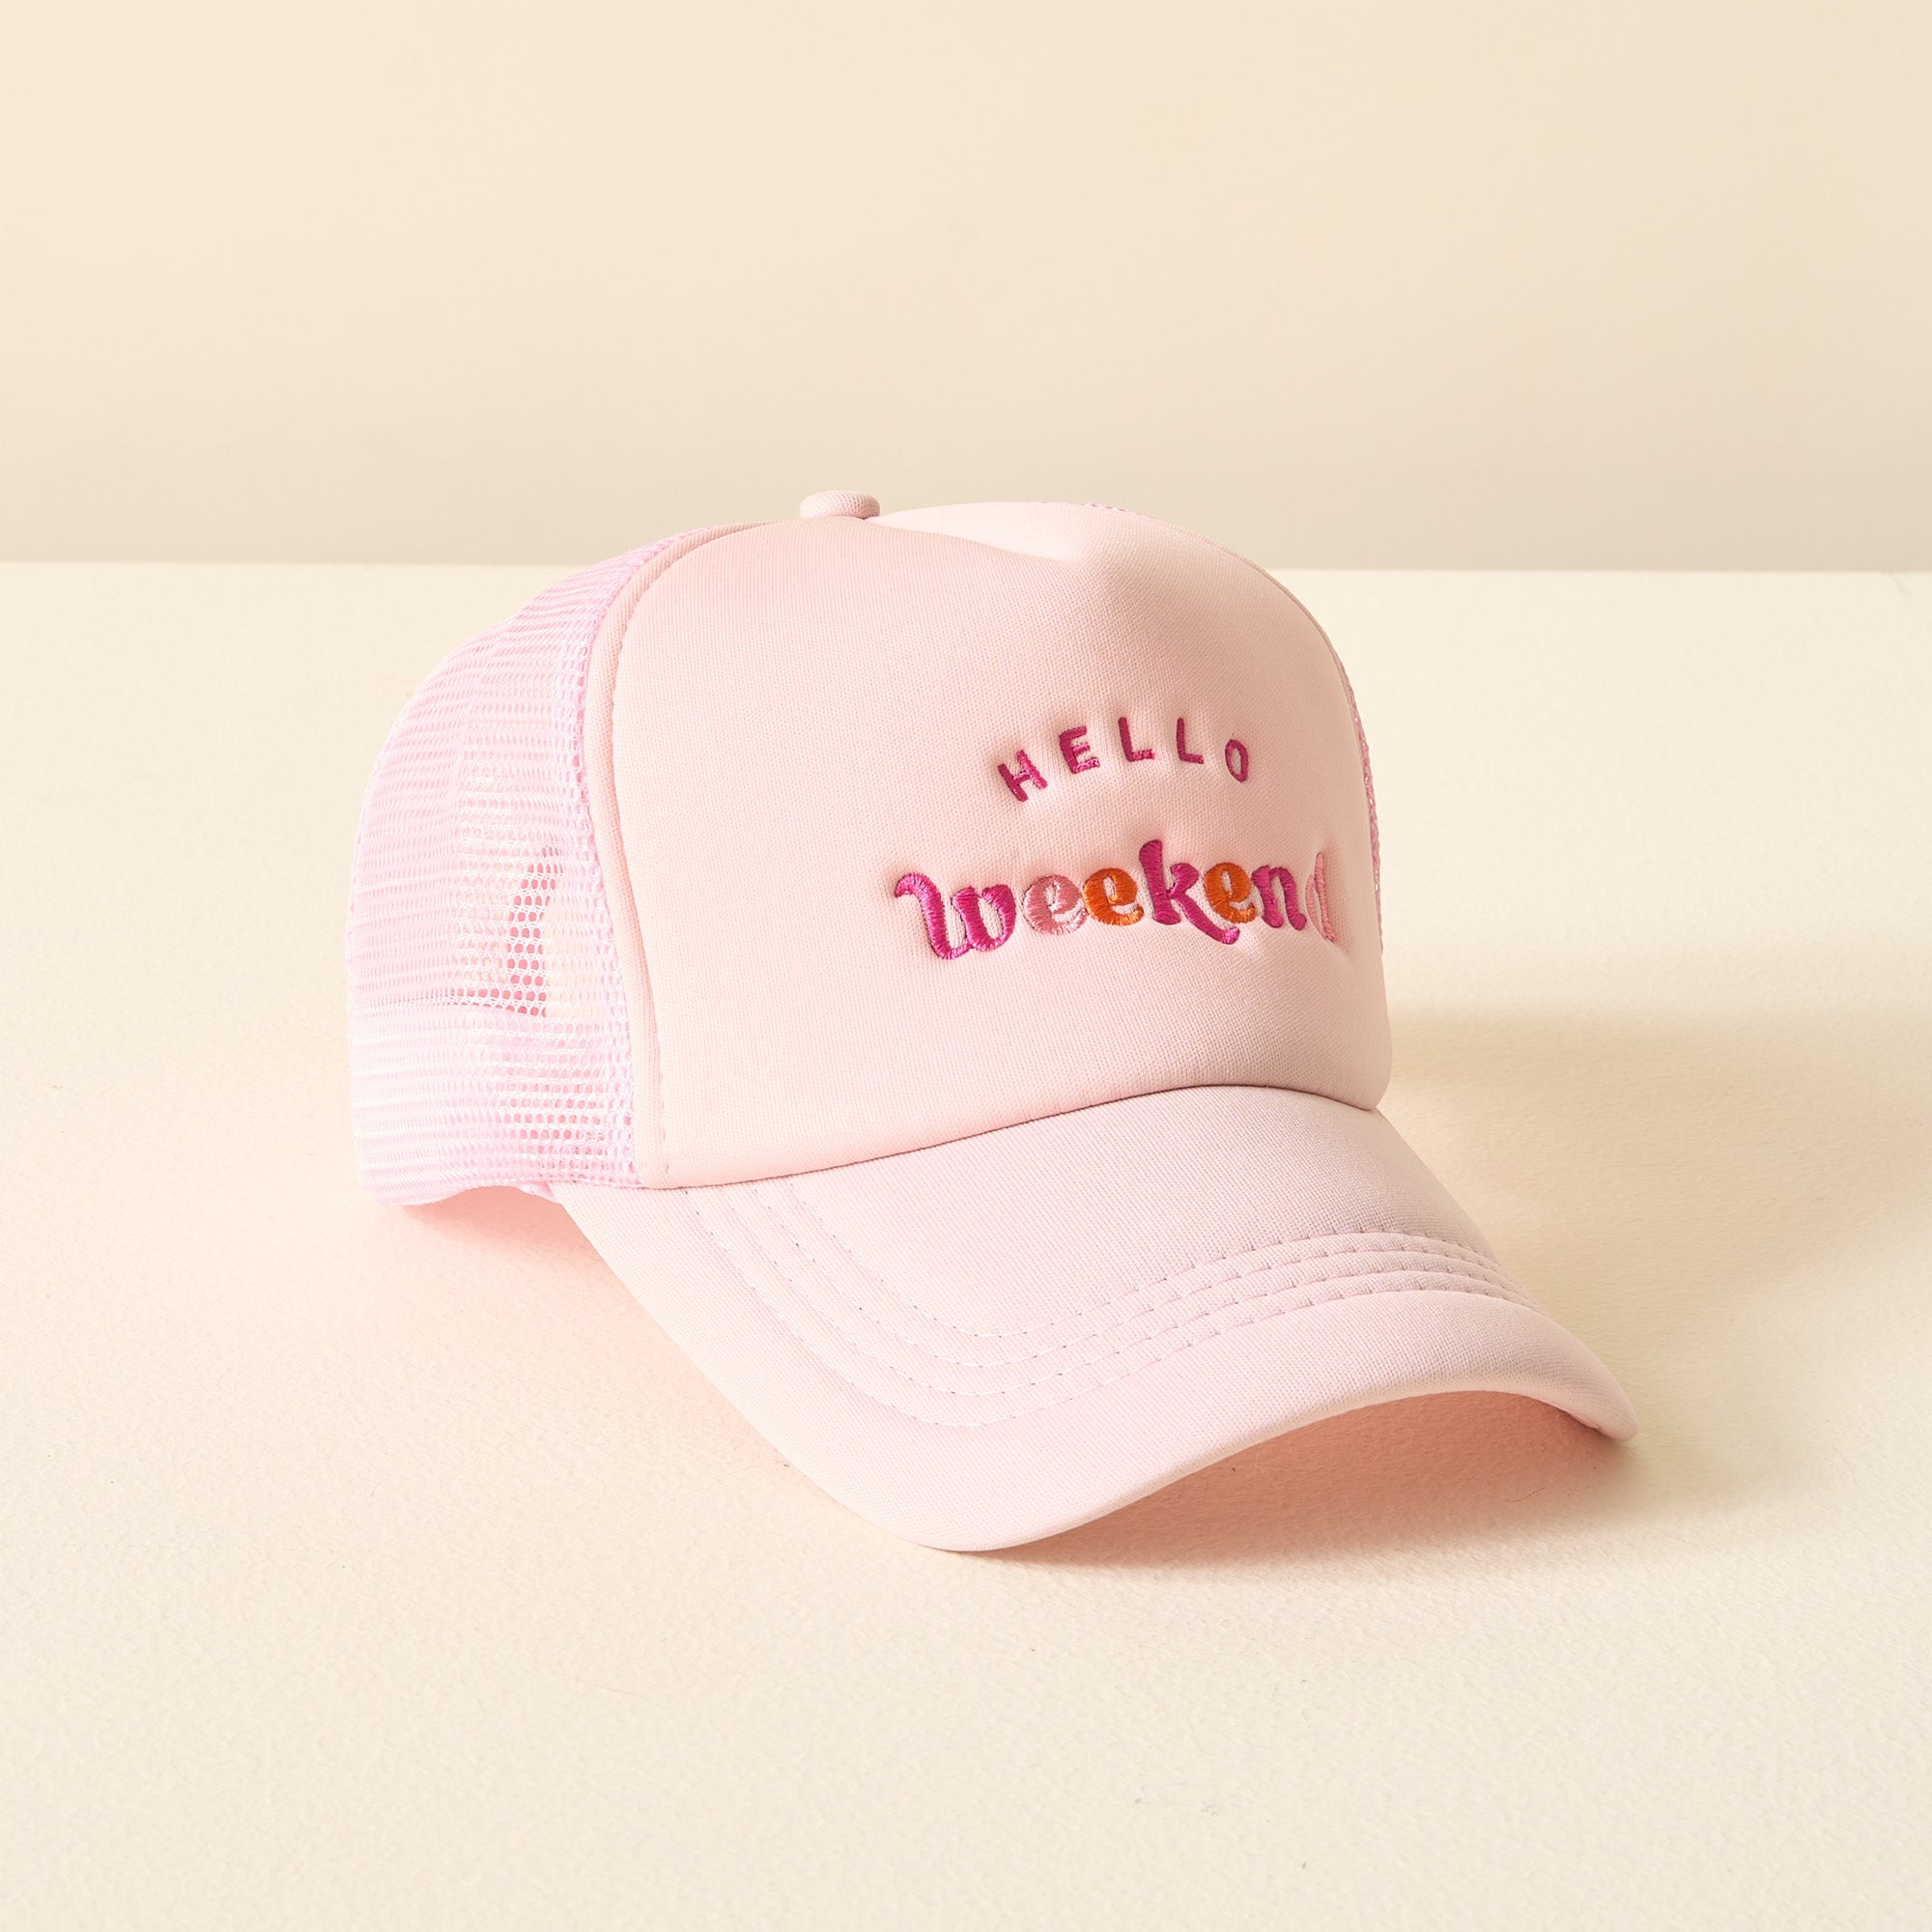 Embroidered Trucker Hat - Hello Weekend